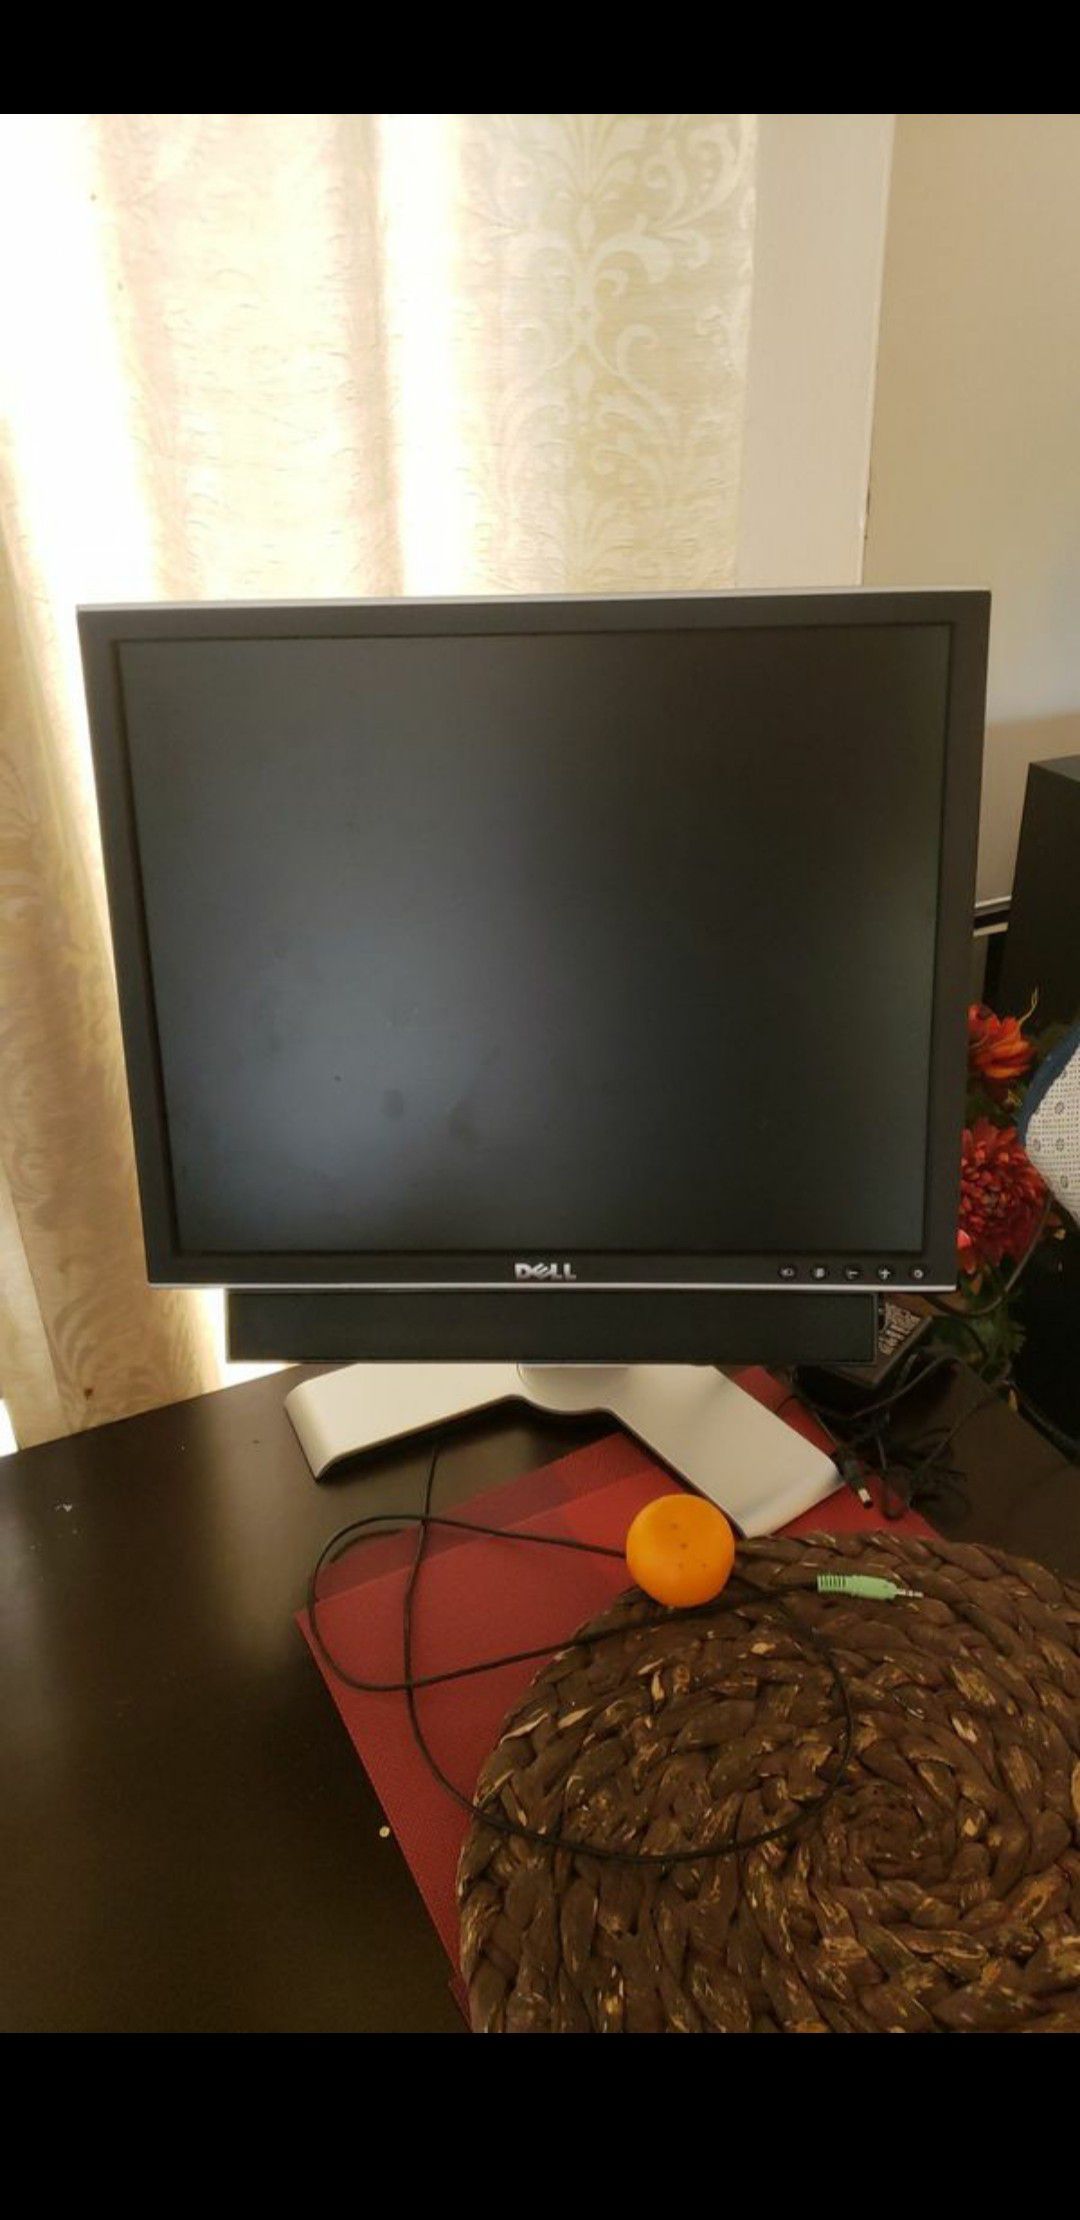 Dell monitor 17 inch